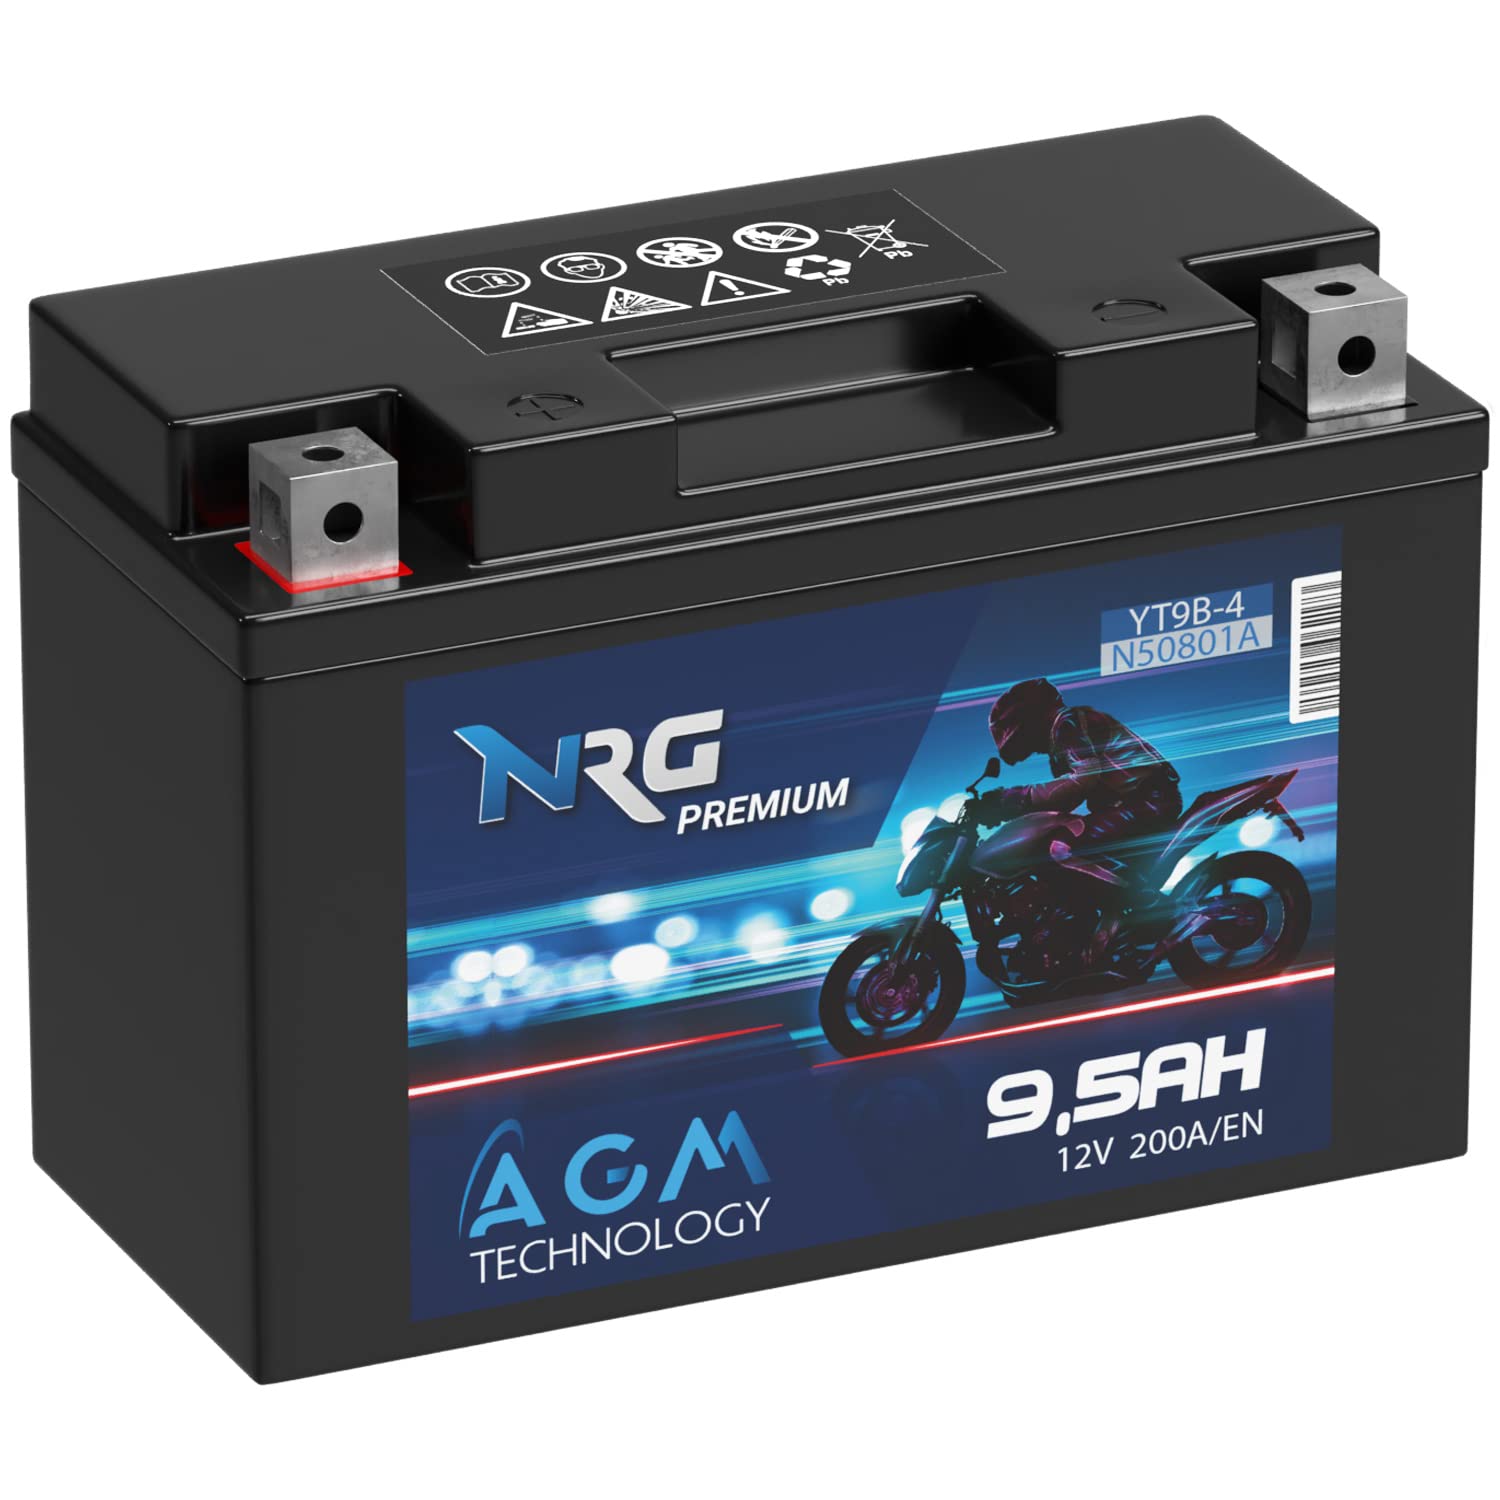 NRG Premium YT9B-4 AGM Motorradbatterie 9,5Ah 12V 200A/EN Batterie YT9B-BS 50801 50815 GT9B-4 auslaufsicher wartungsfrei ersetzt 9Ah 8Ah von NRG PREMIUM